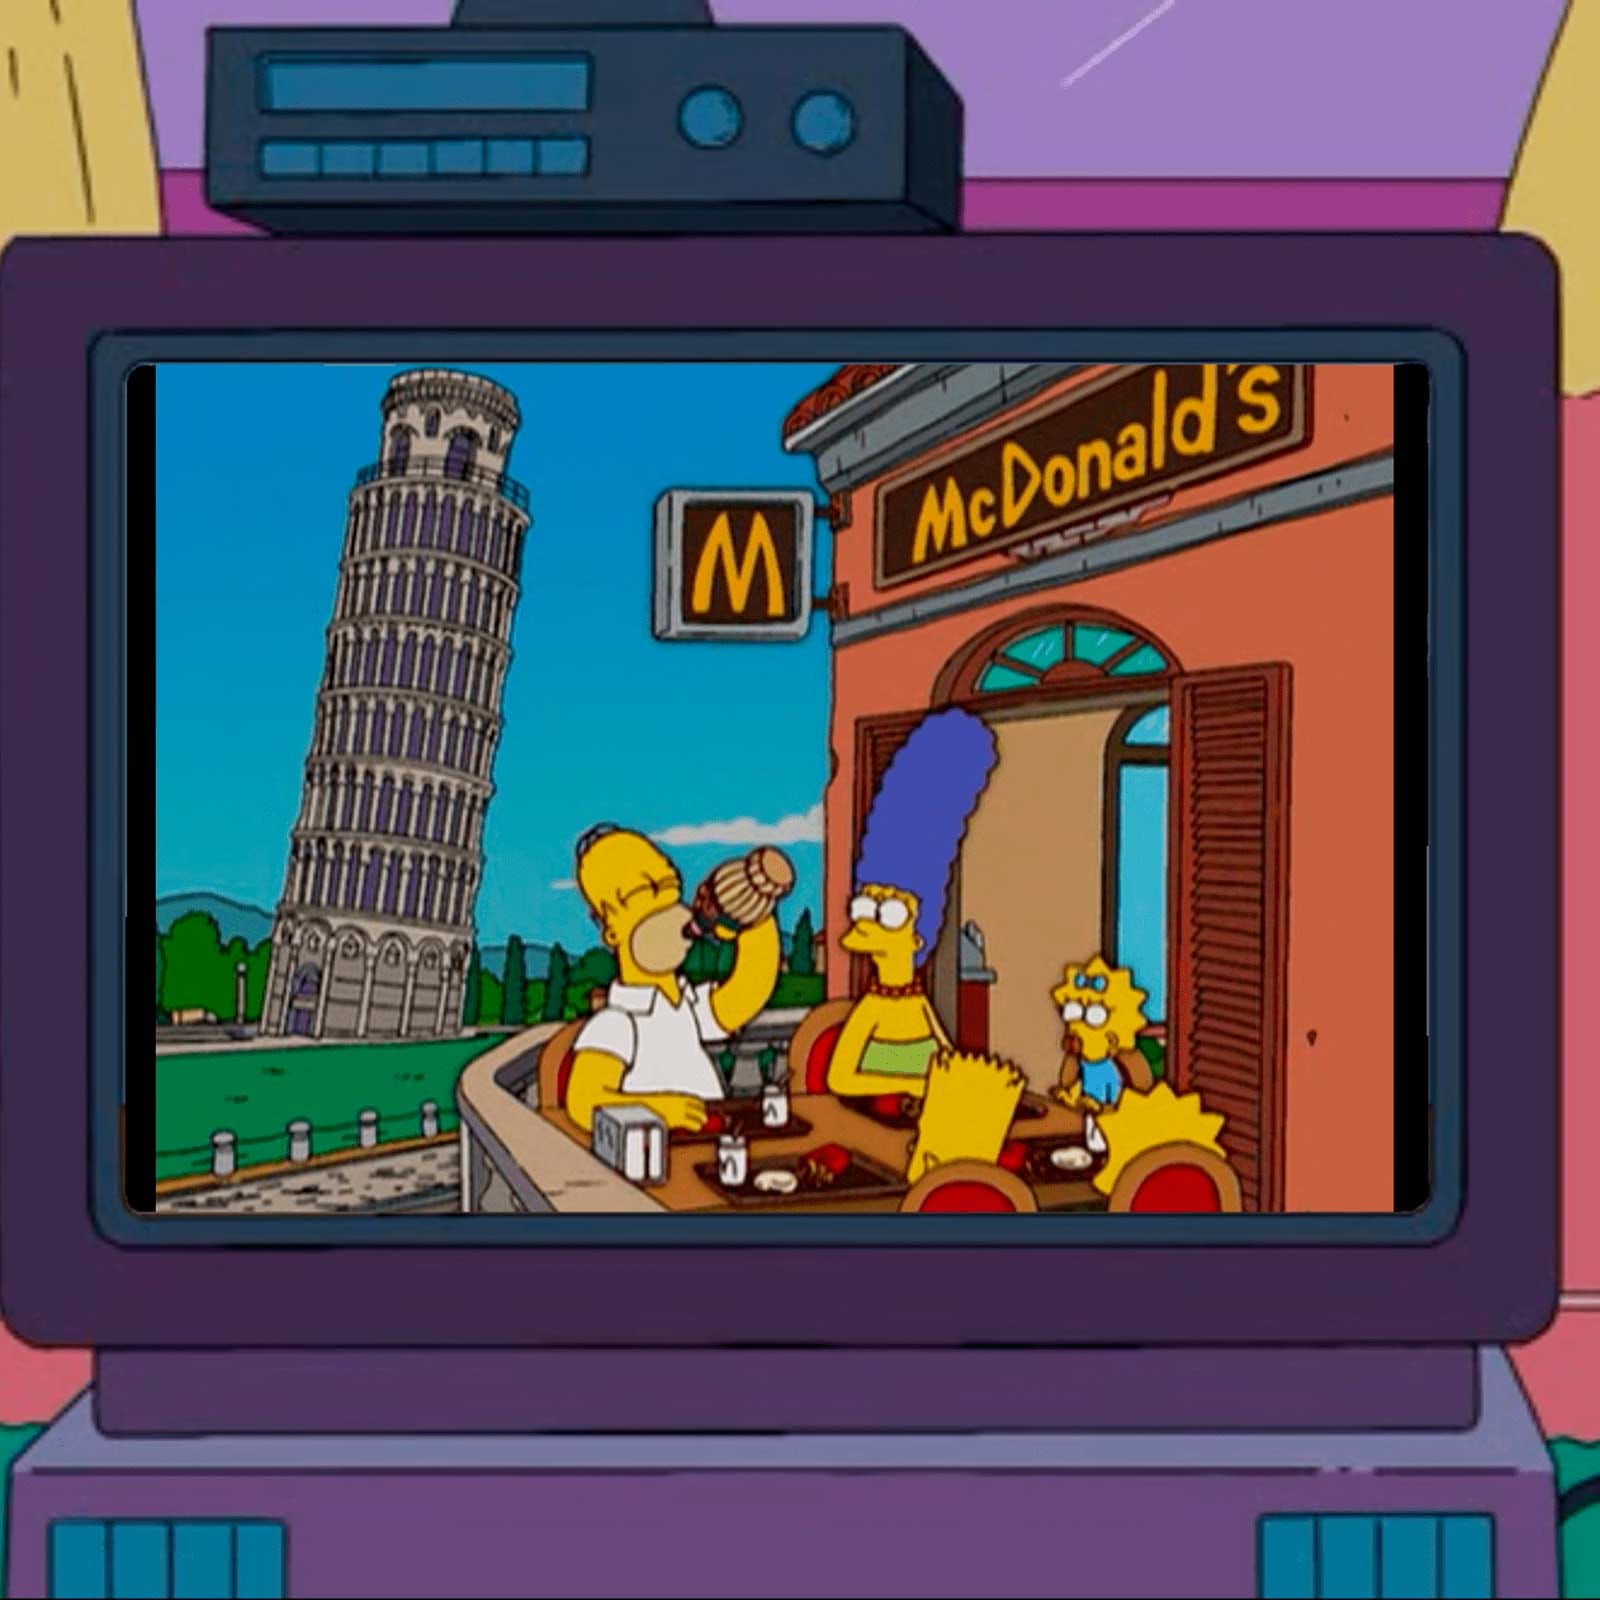 Фанат сделал мини-телевизор из «Симпсонов»